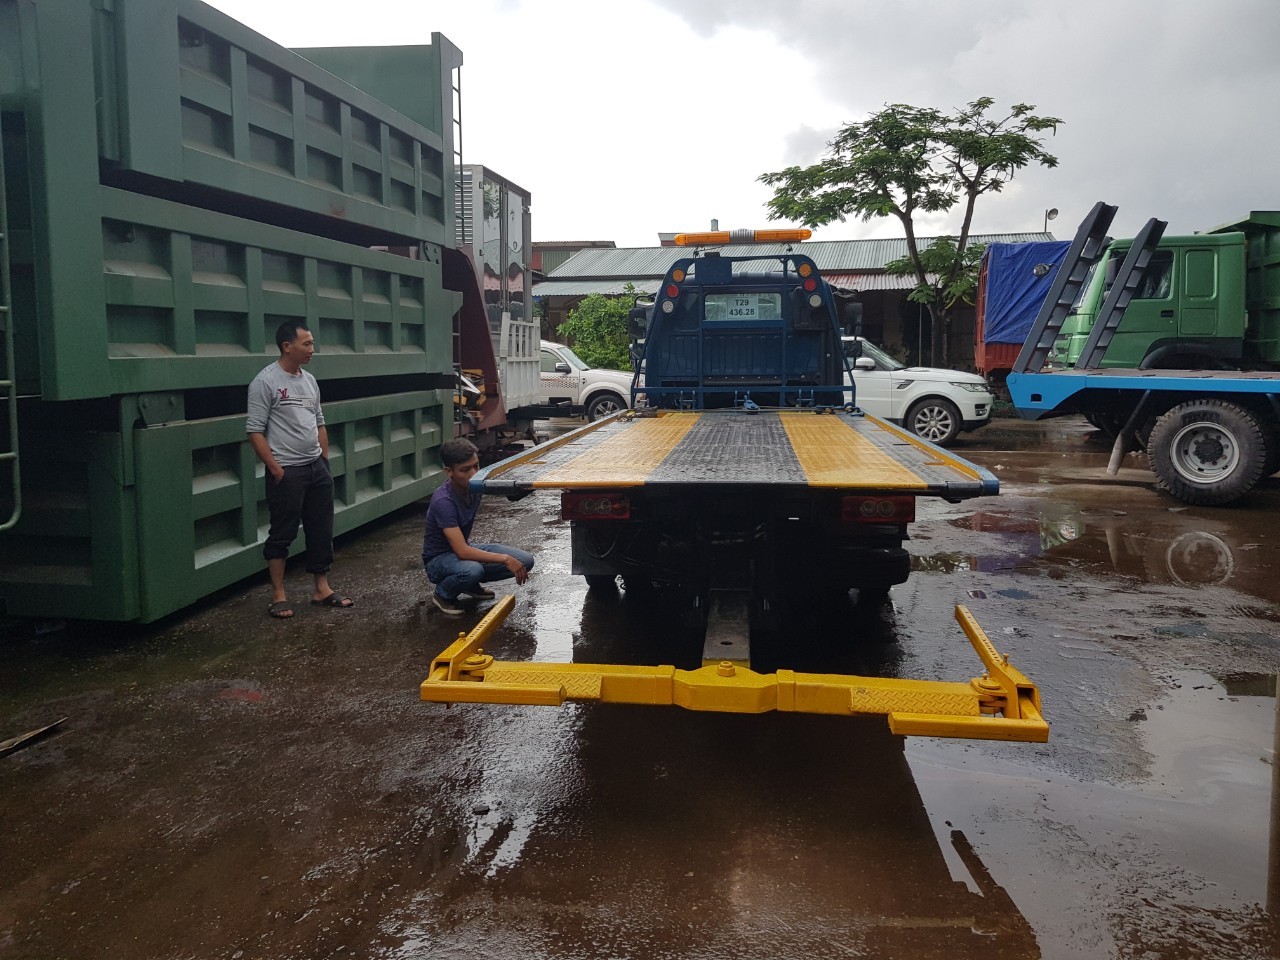 xe cứu hộ giao thông Thaco ollin 500B